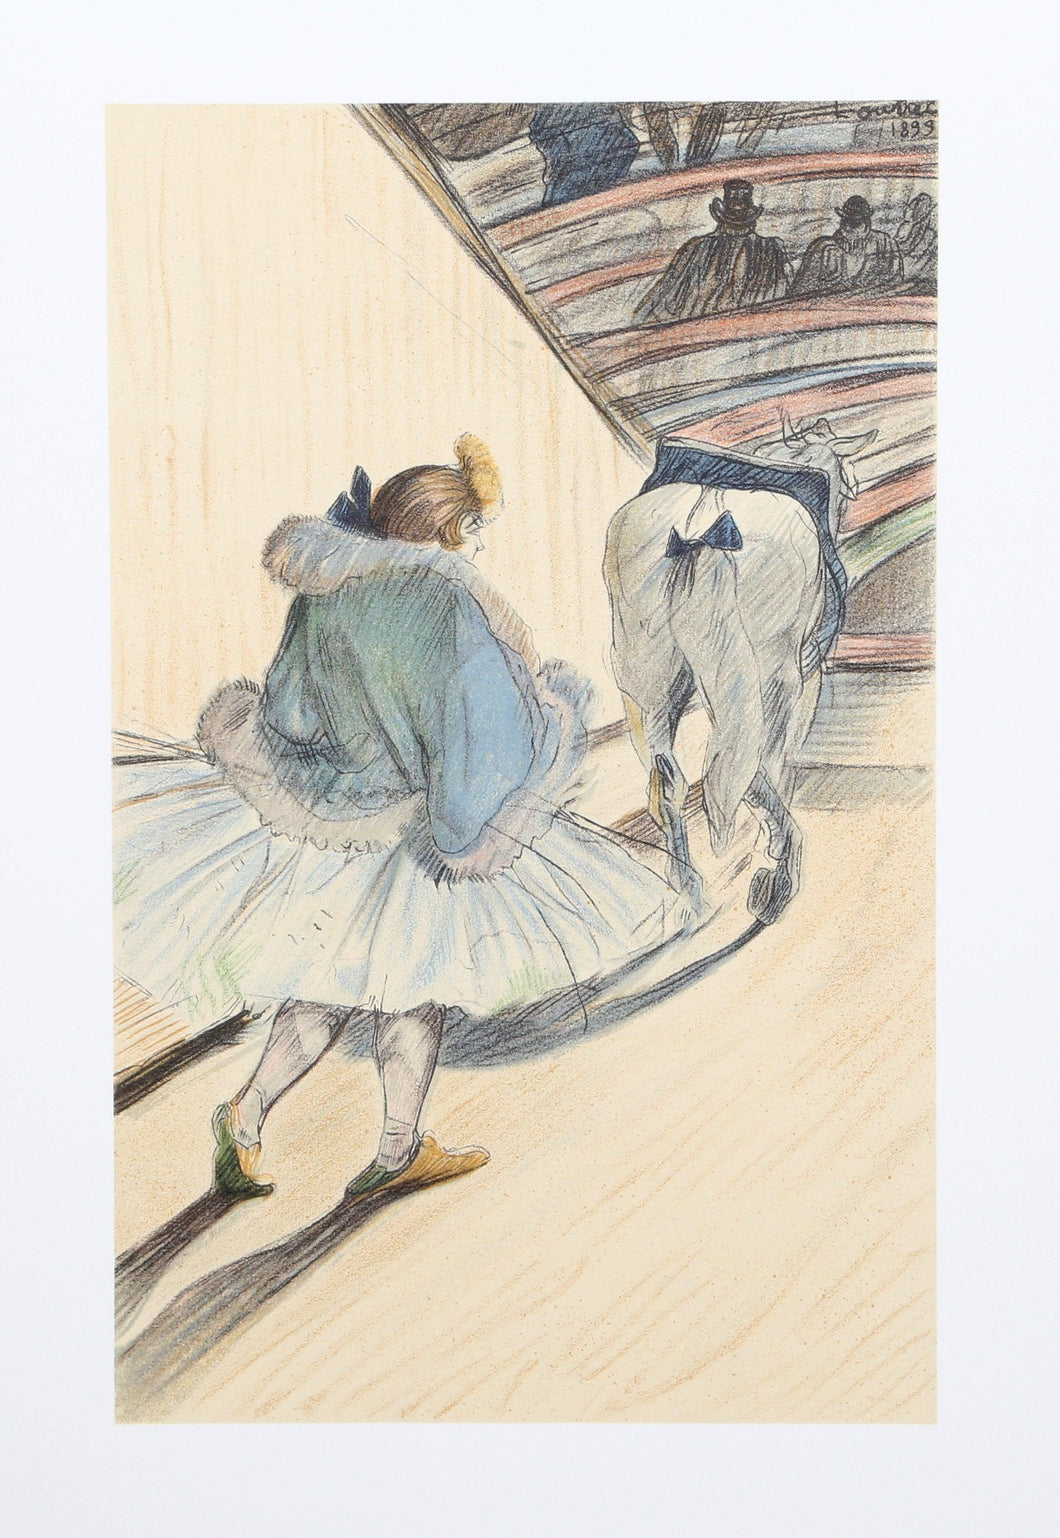 The Circus Portfolio 9 Lithograph | Henri de Toulouse-Lautrec,{{product.type}}